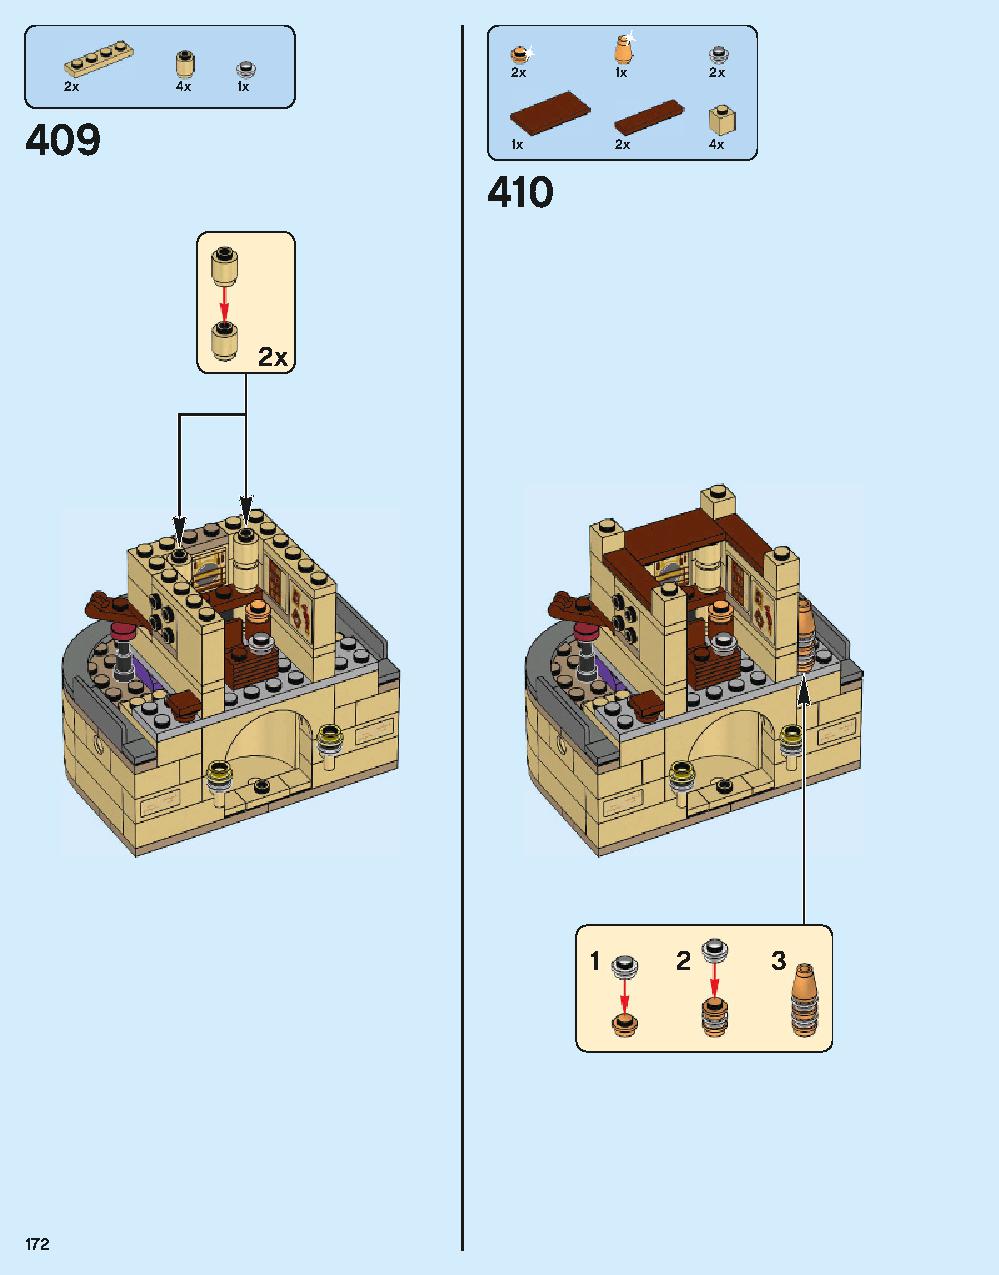 ホグワーツ城 71043 レゴの商品情報 レゴの説明書・組立方法 172 page